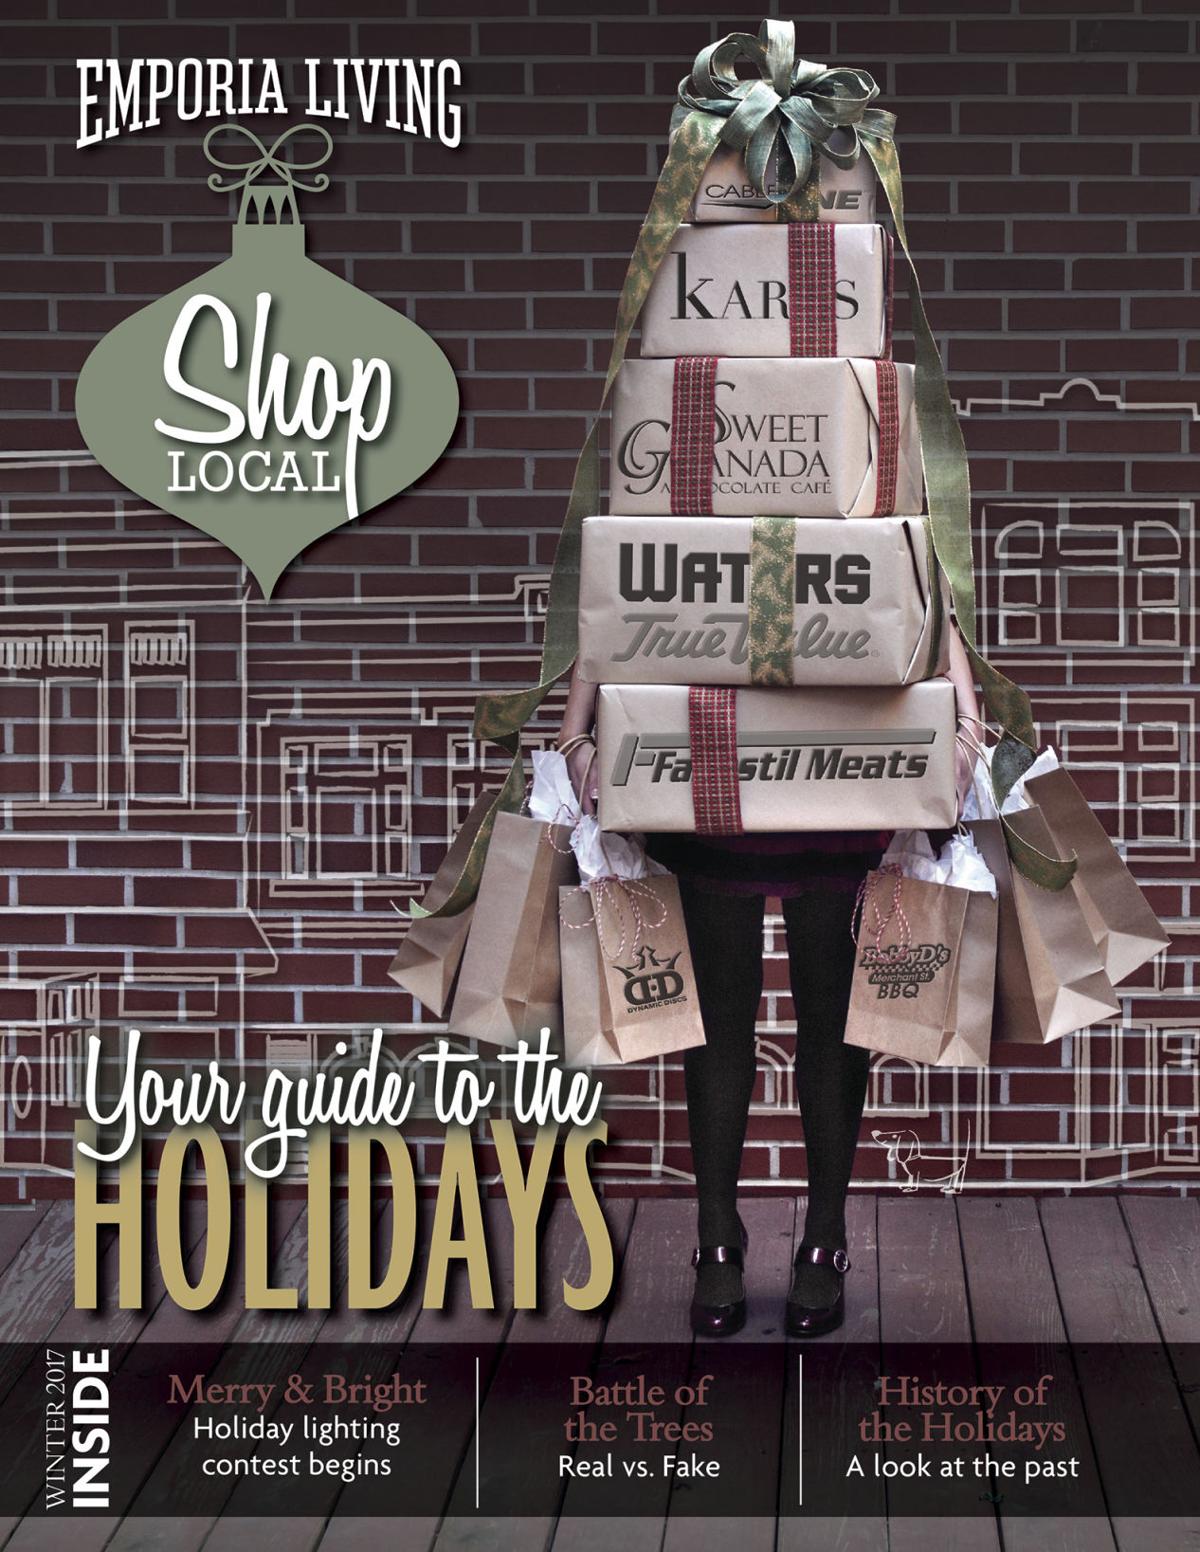 Shop Local your guide to the holidays | Area News | emporiagazette.com